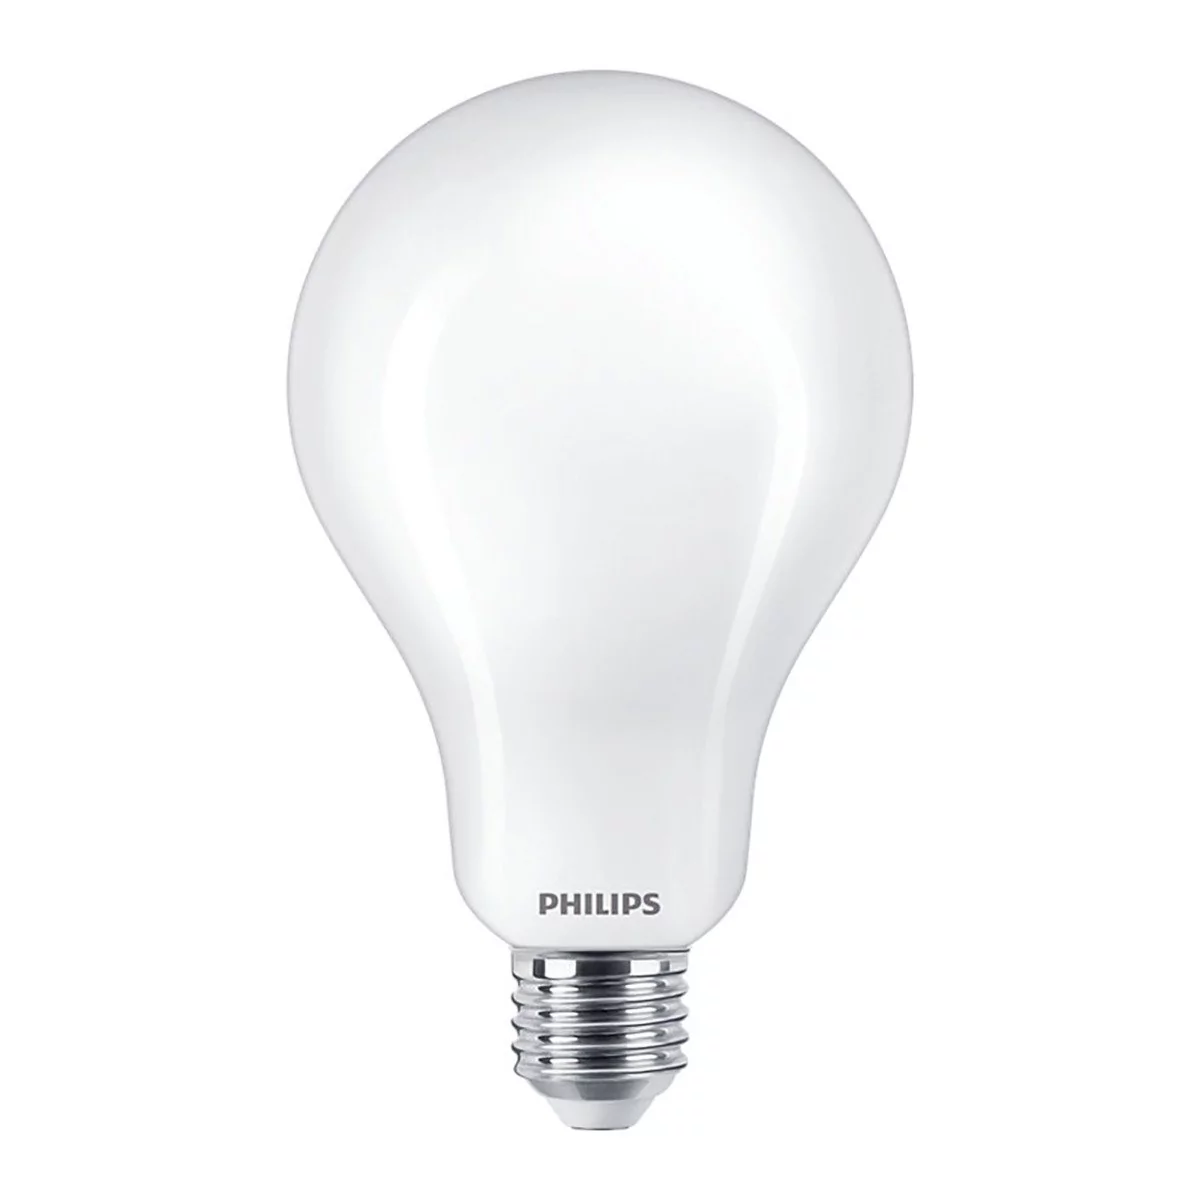 Philips Żarówka 23W (200W) Led E27 Zimne białe światło 6500K 3452lm